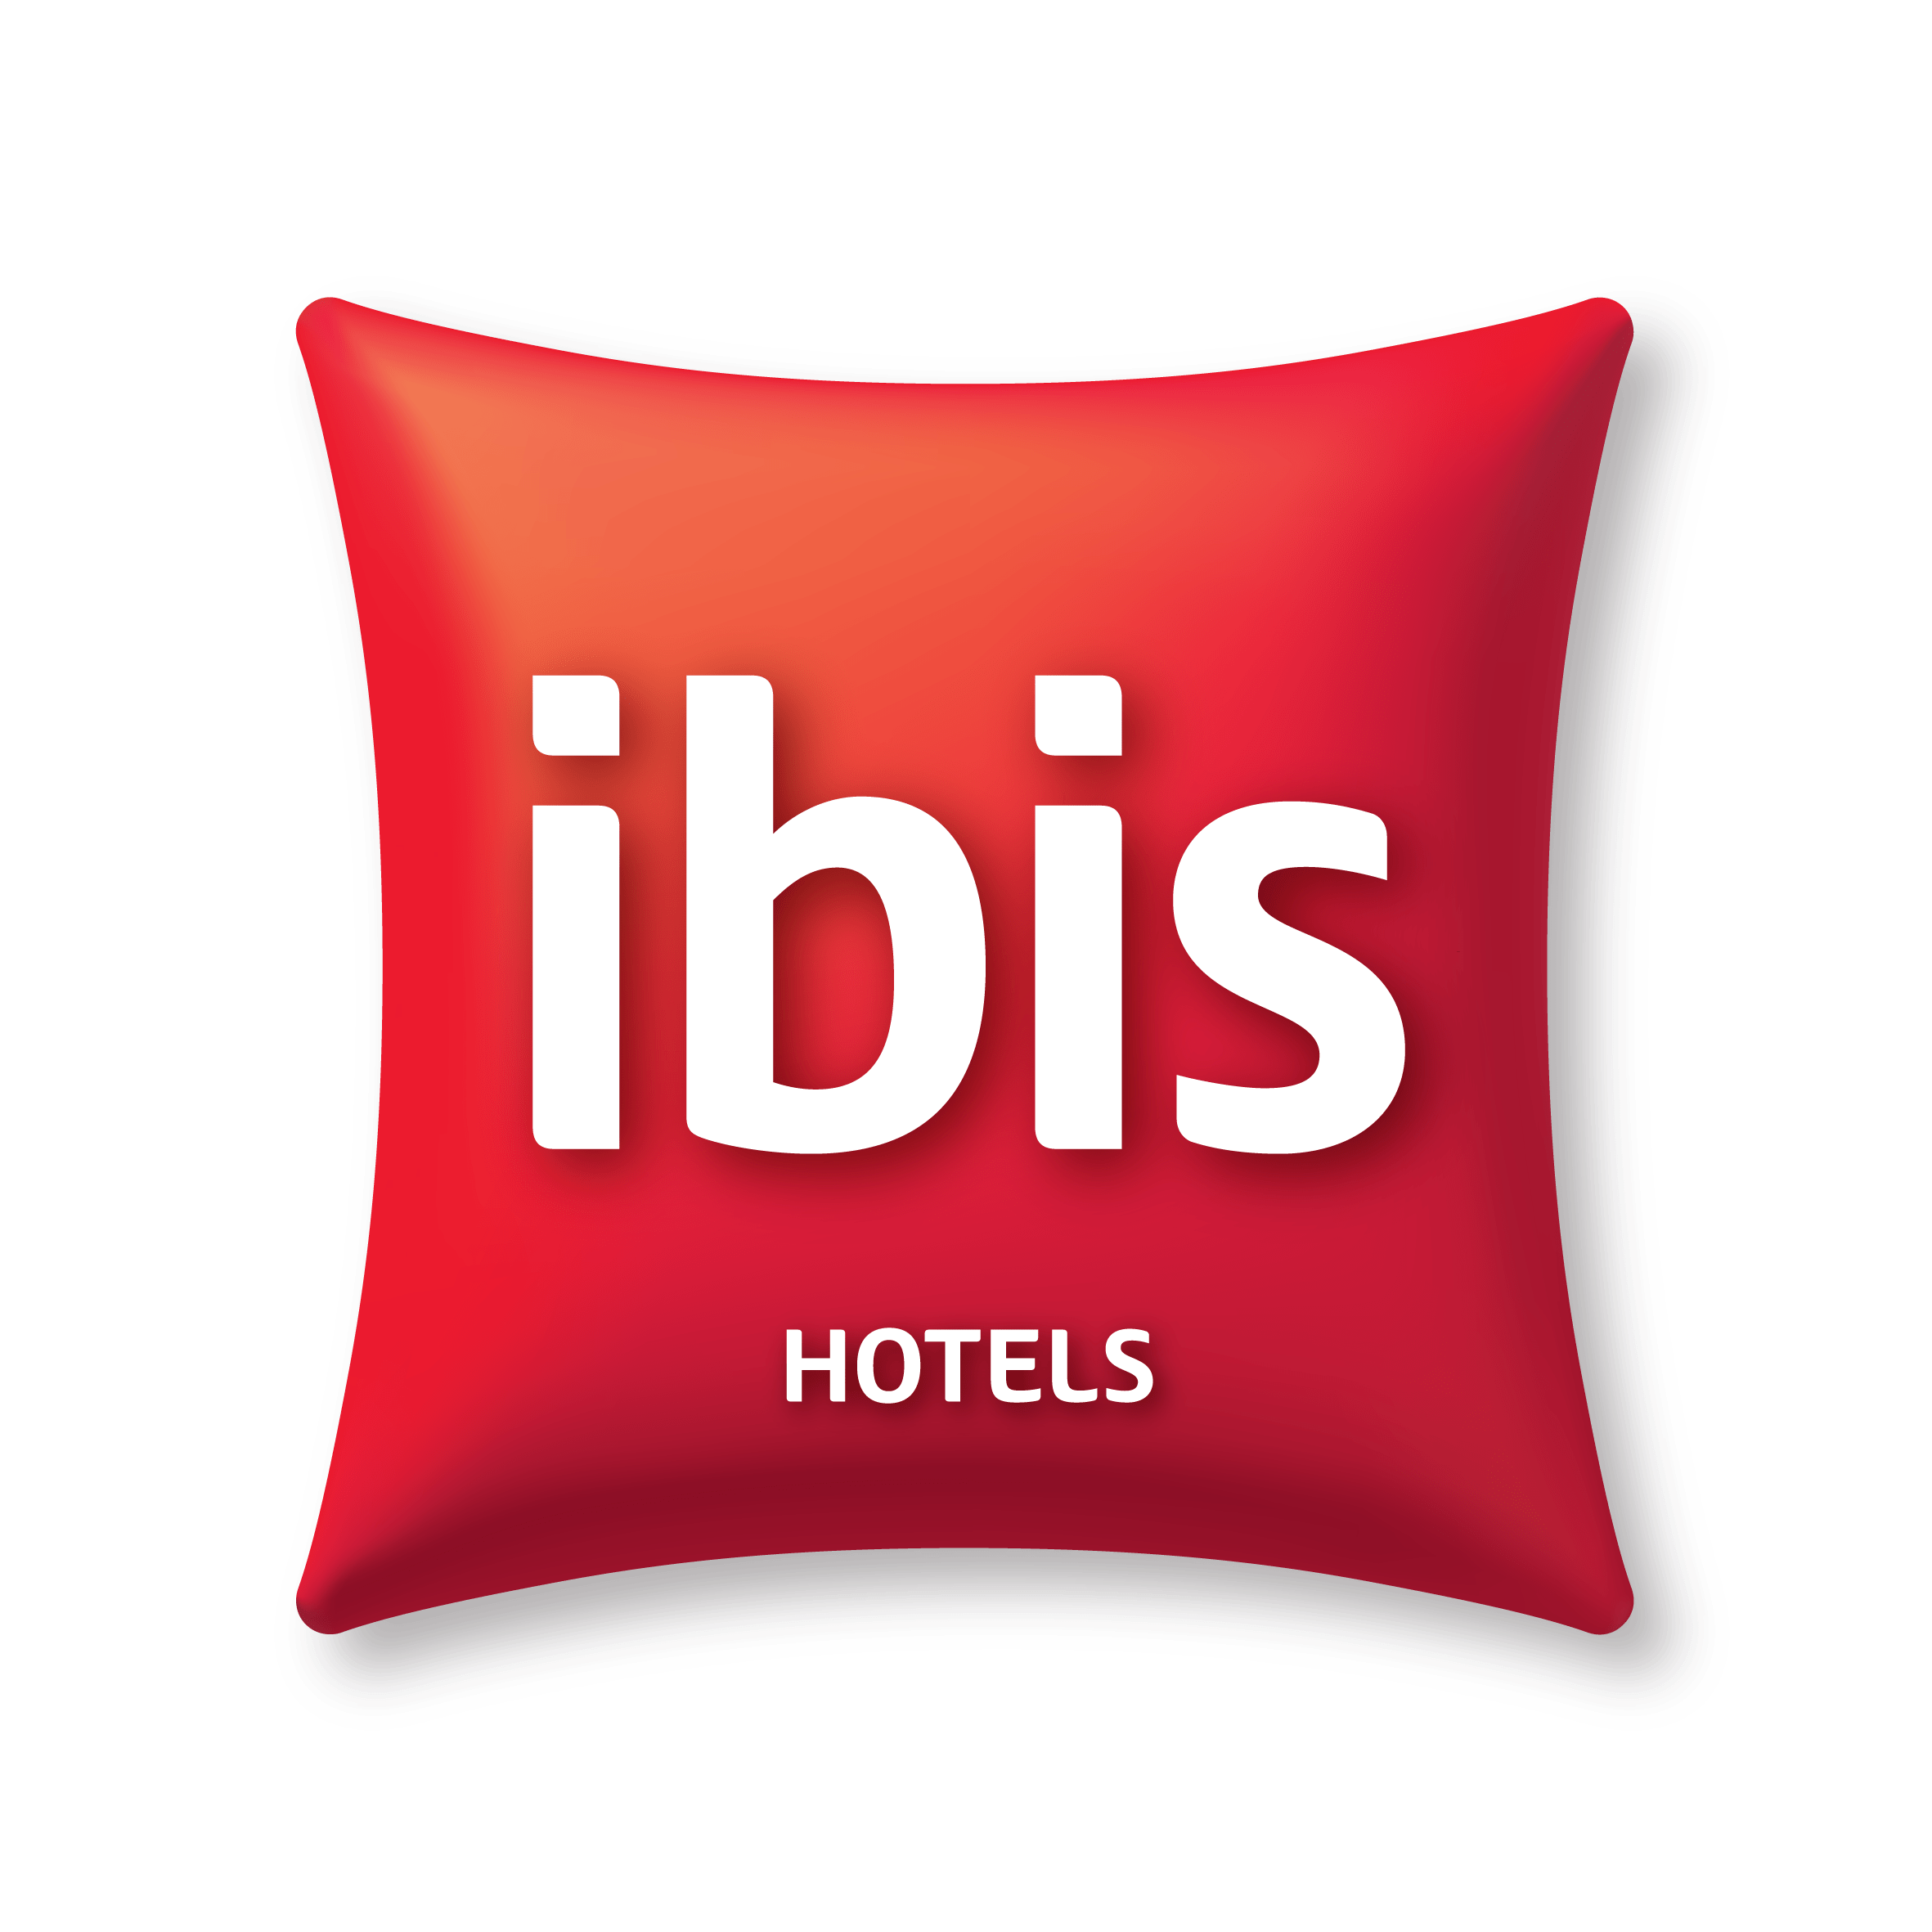 IBIS Hôtel